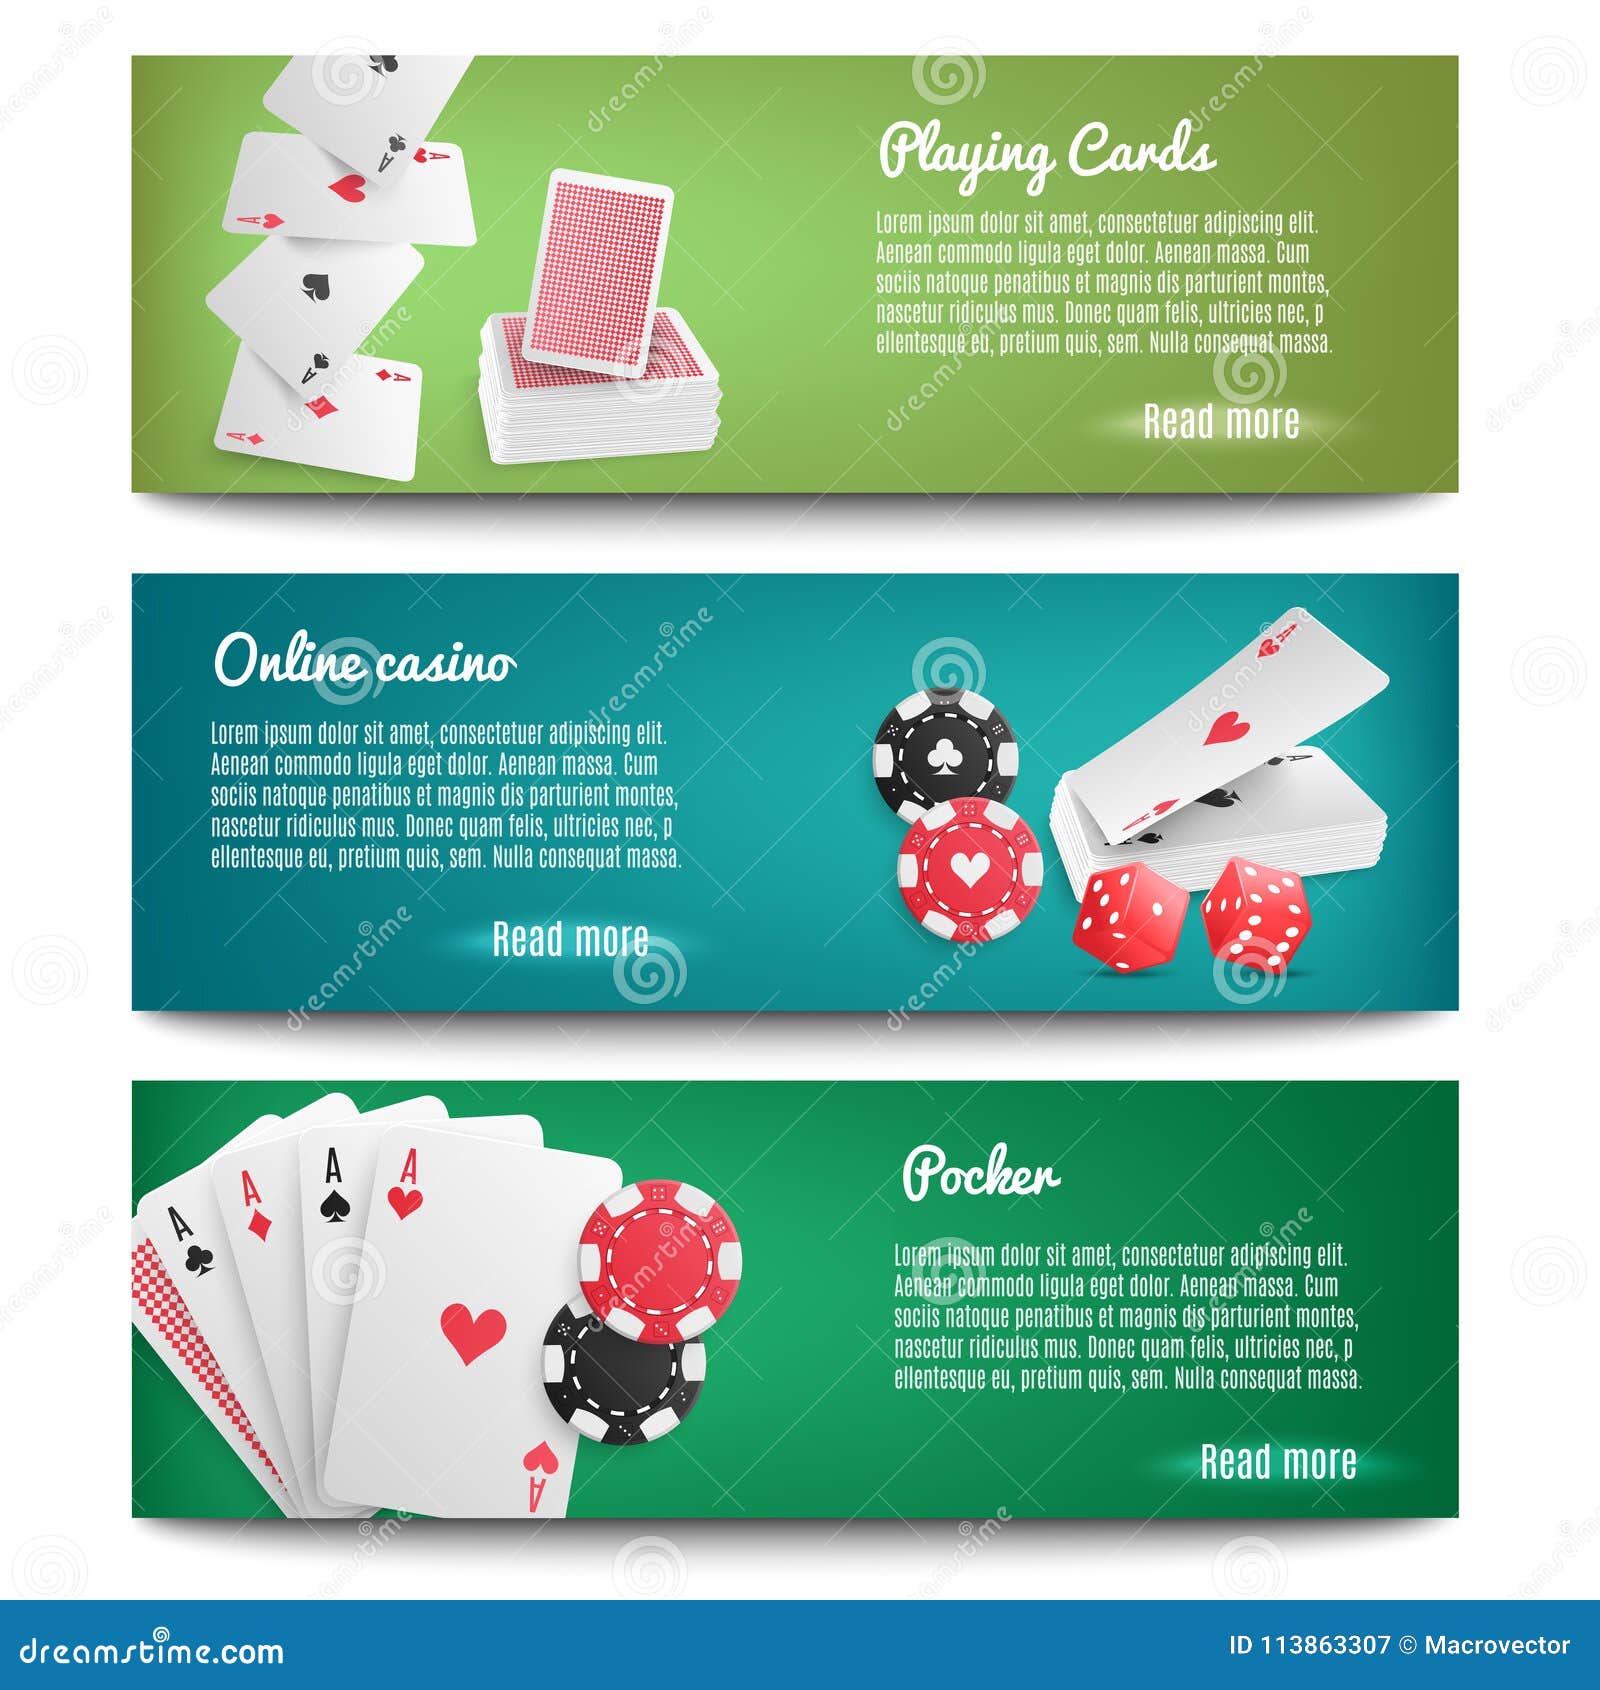 Play Online Casino Games at Casino Winner Online Casino